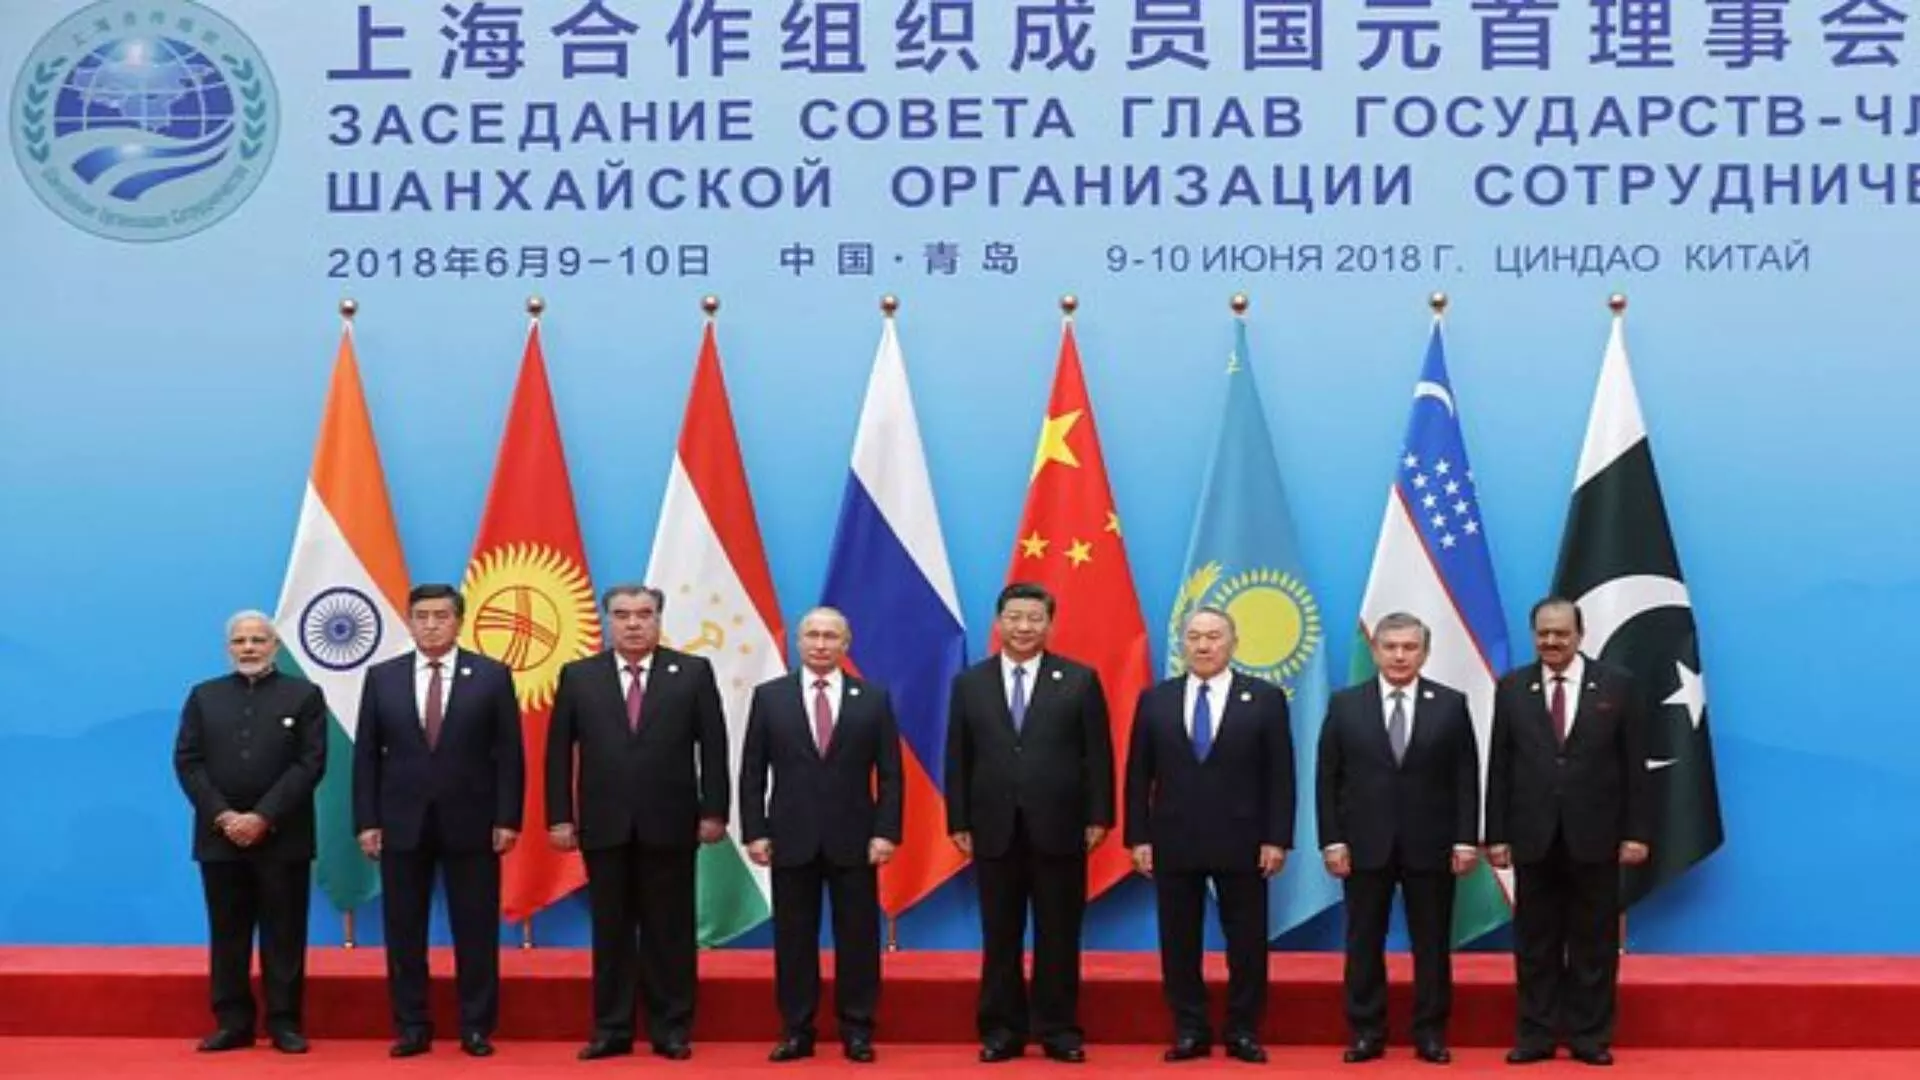 #SCO परीषद चीनशी धोका की रशियाची मैत्री?